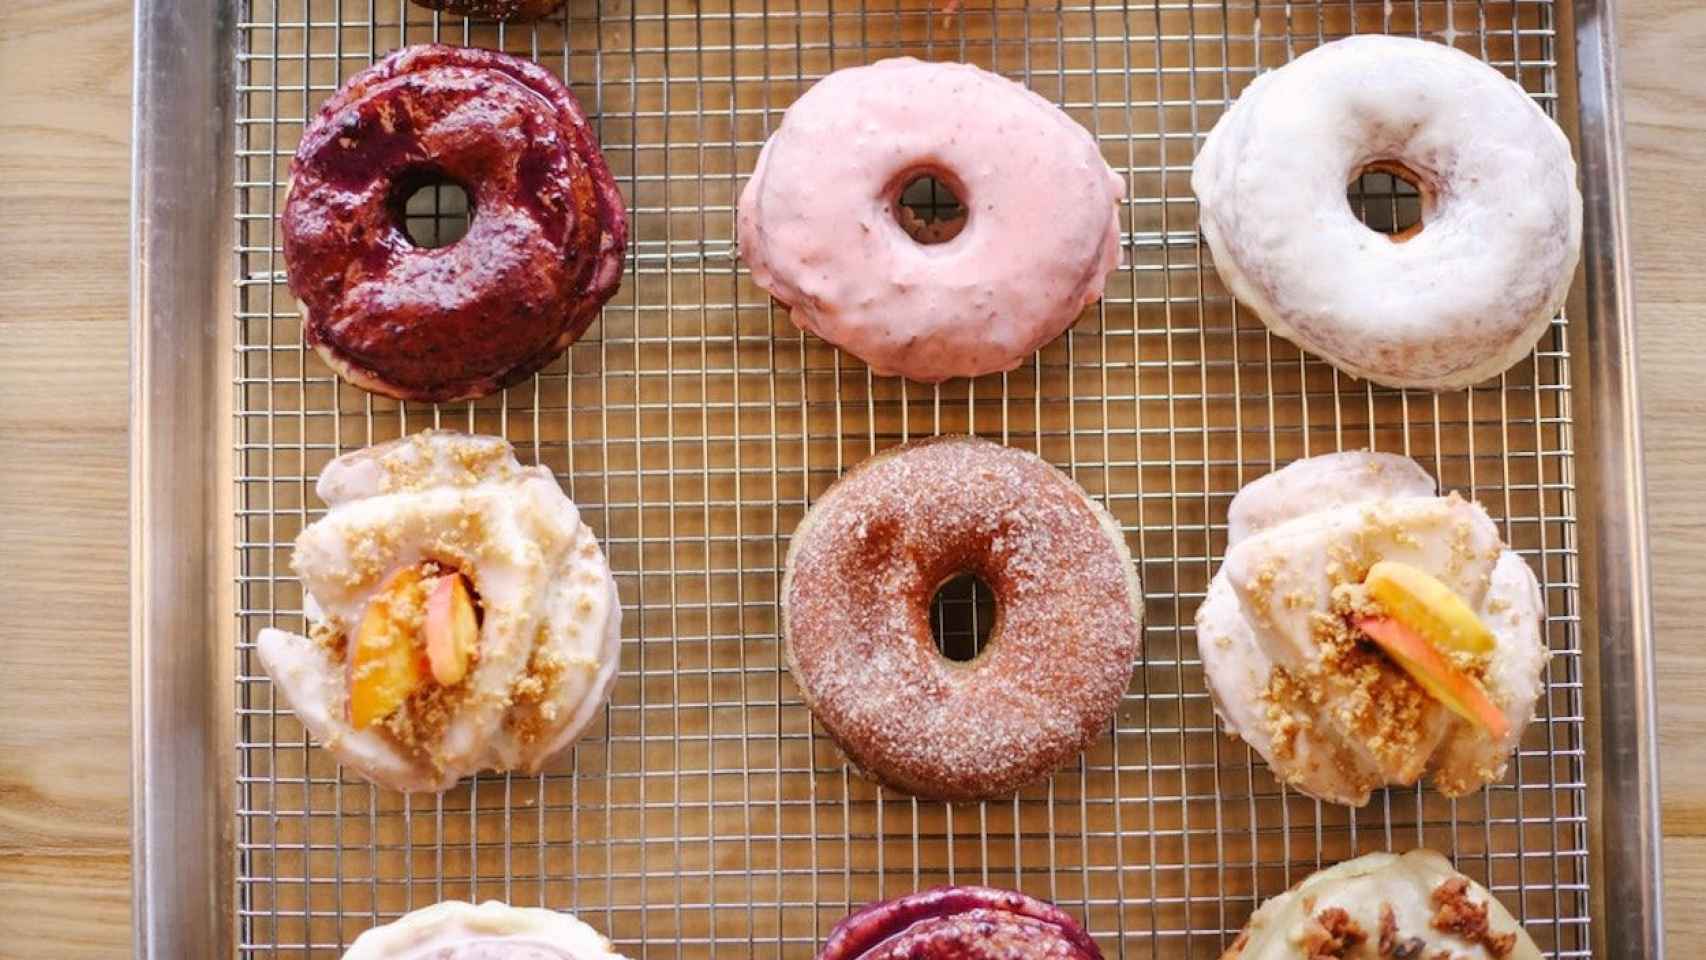 Publicación de Instagram con los mejores dónuts de Barcelona / UNSPLASH